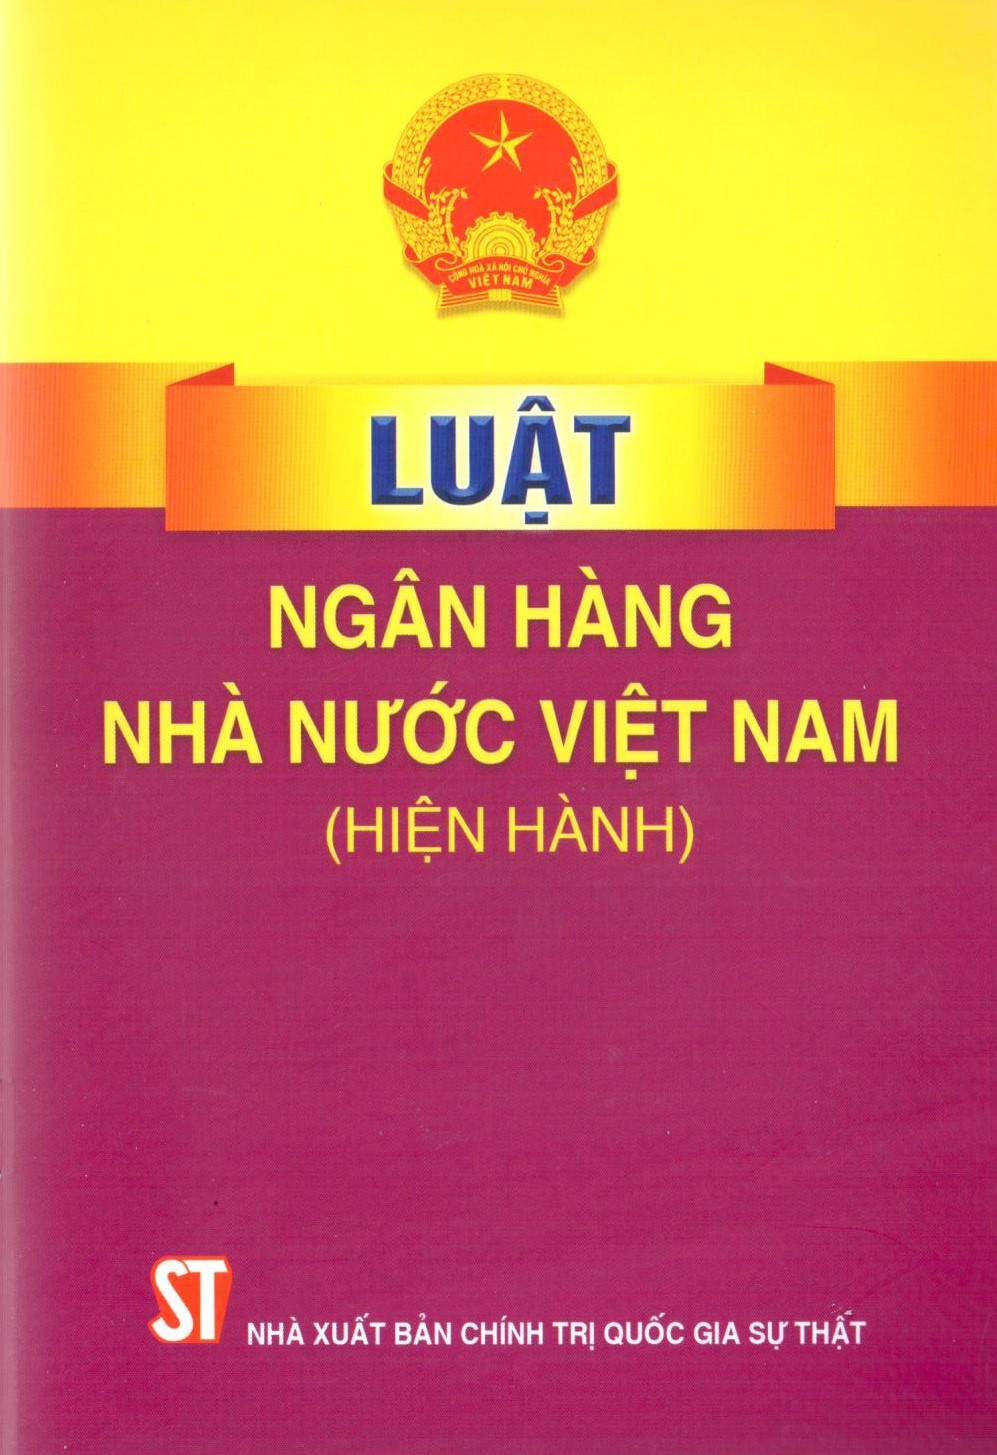 Luật Ngân hàng Nhà nước Việt Nam (hiện hành)